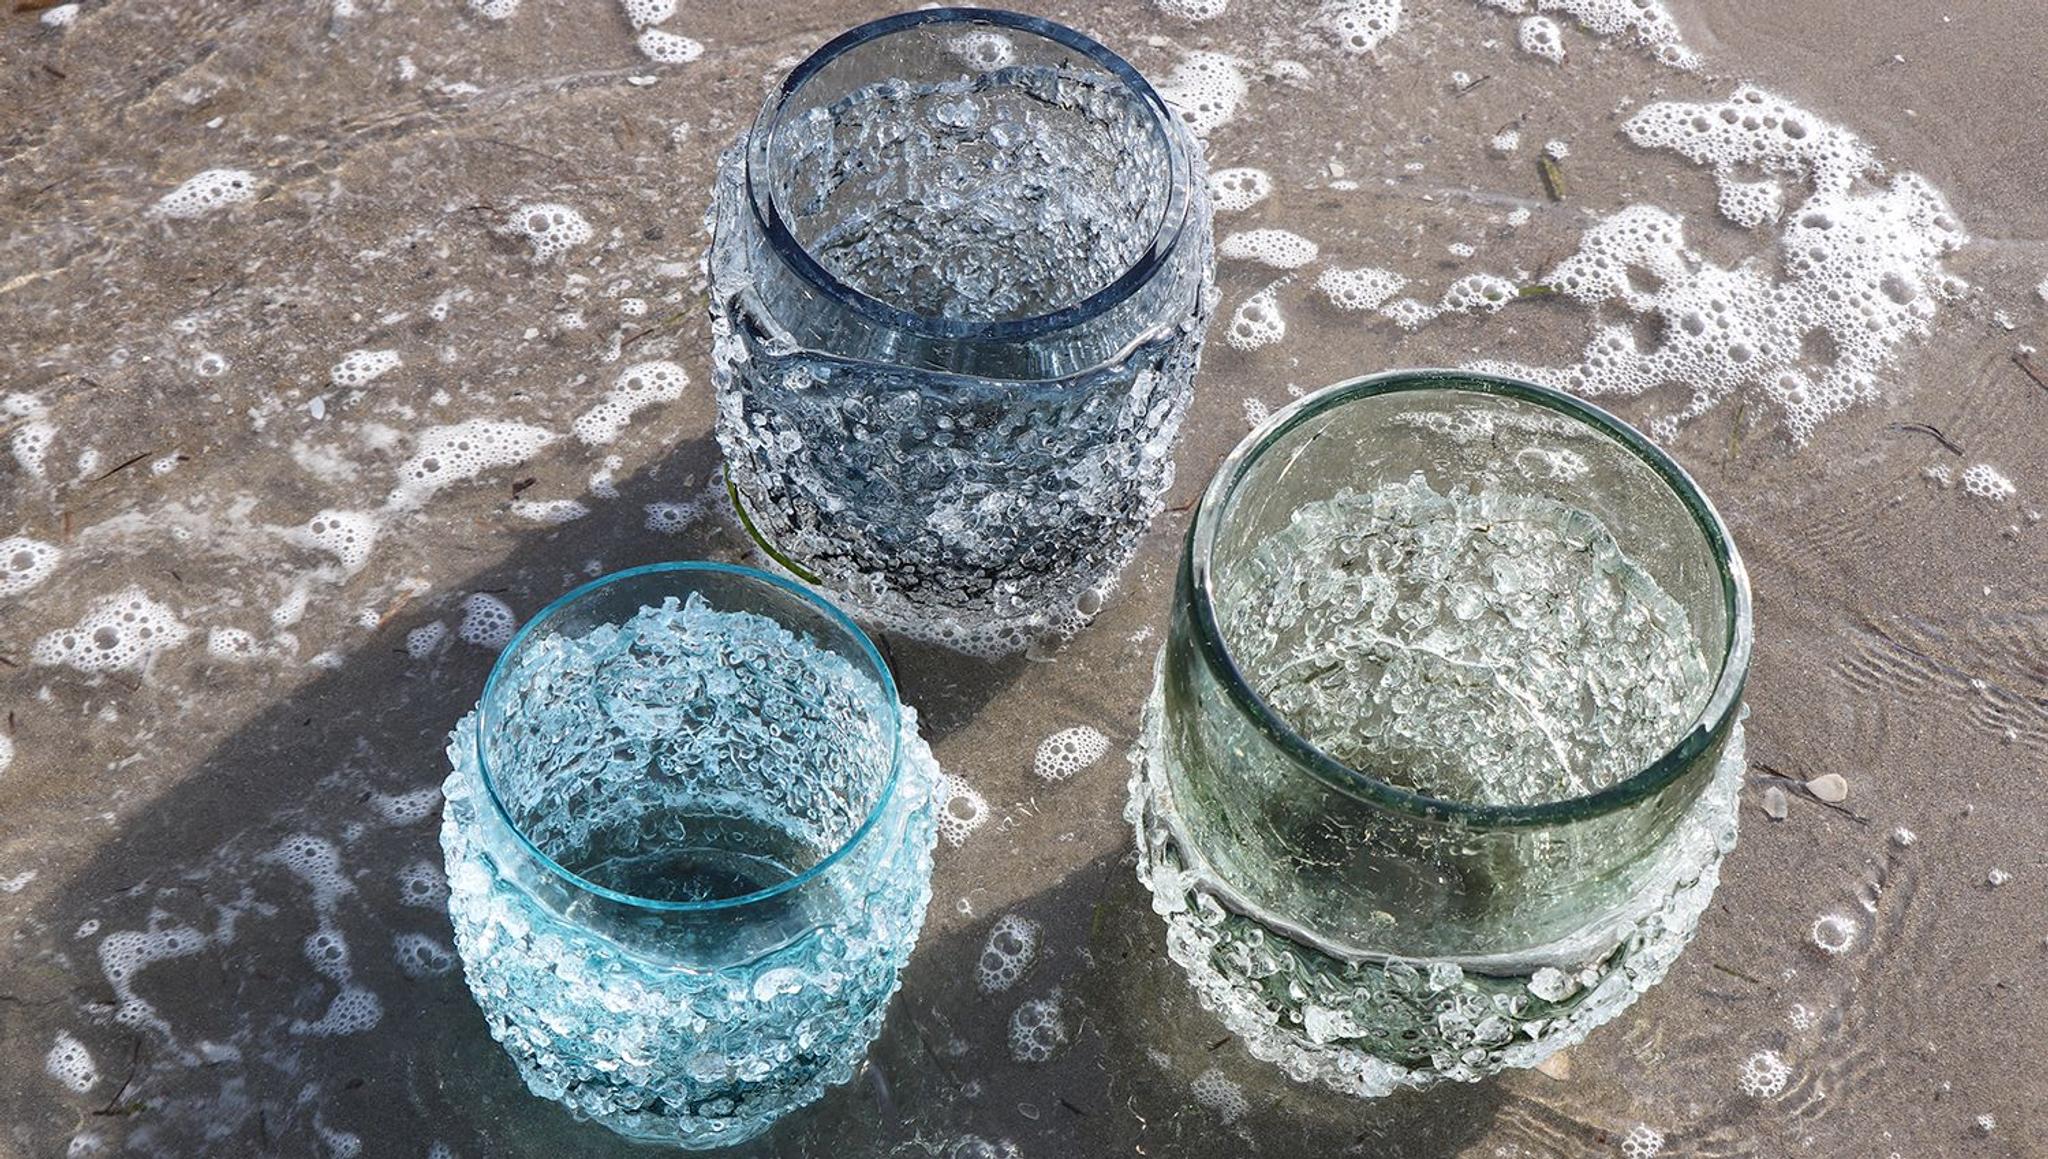 Venetian Design for Artemest: Micheluzzi Glass presents Ghiaccio 